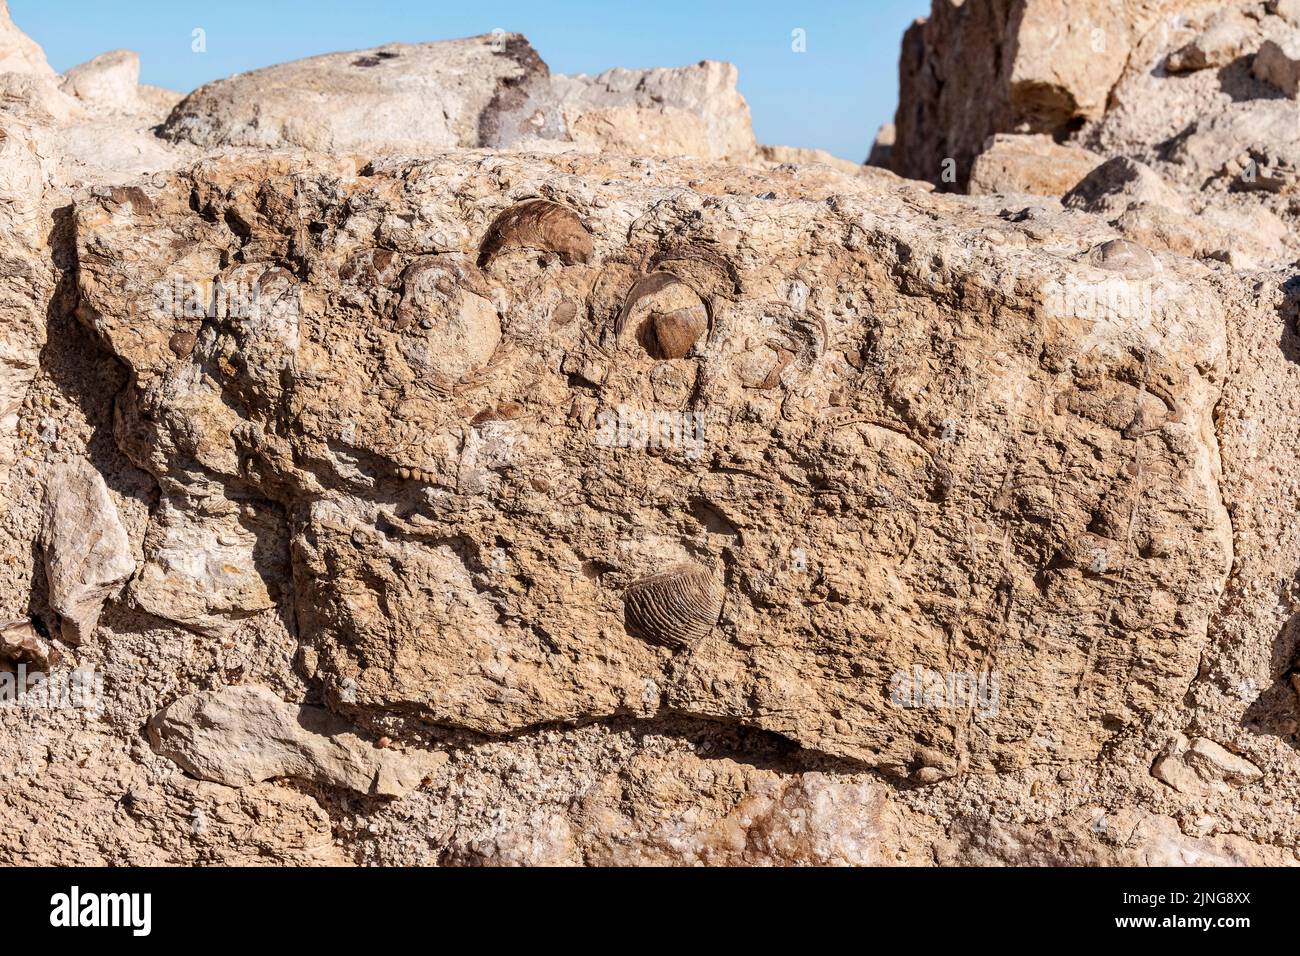 Ancienne bâtisse pleine de fossiles ammonites dans les ruines de la forteresse de Khirbet Qatsra Nabatéan sur la route des épices dans l'Arava en Israël Banque D'Images